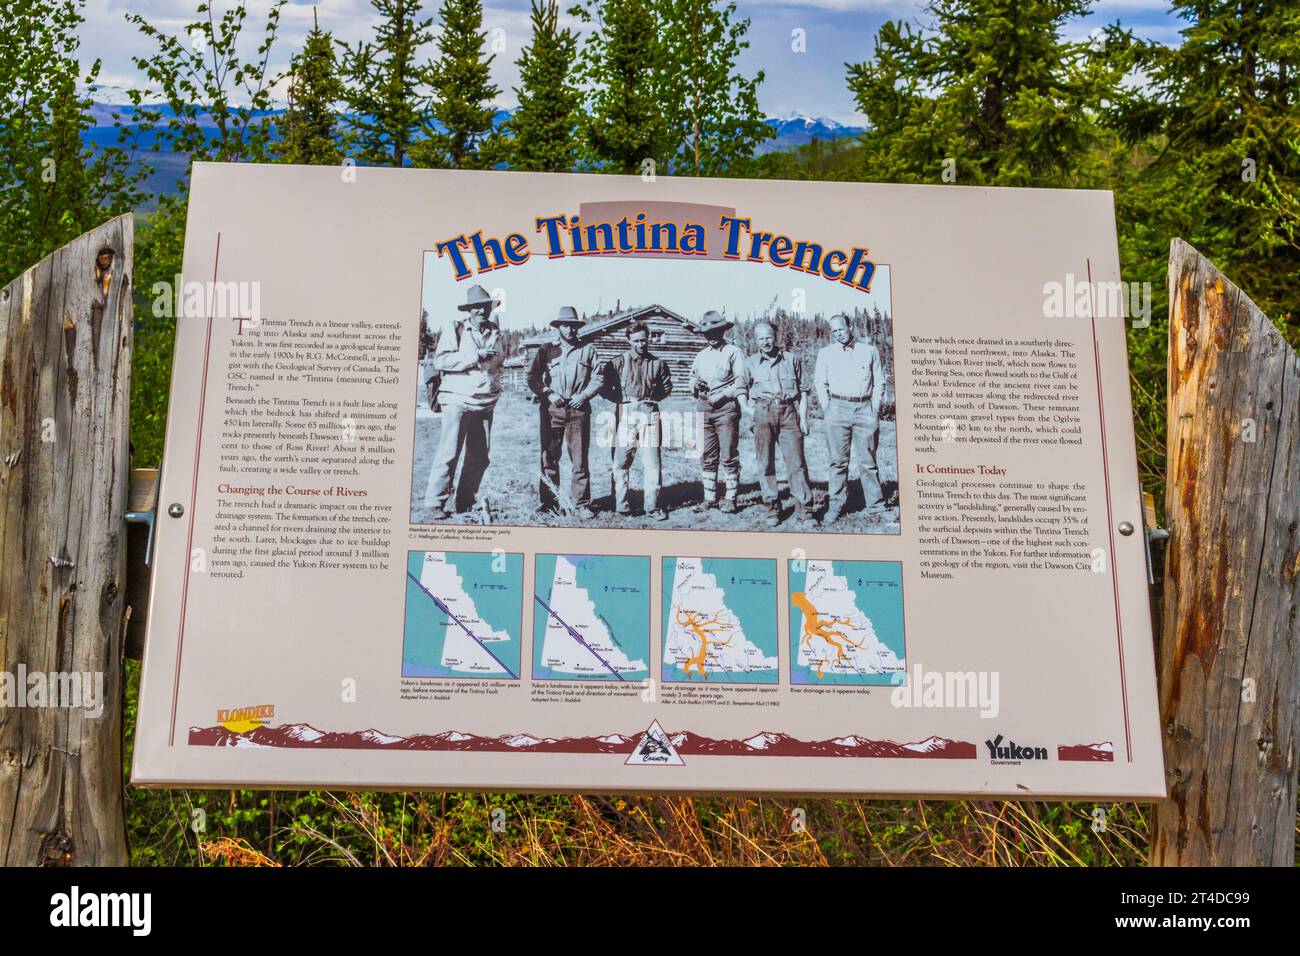 Punto panoramico Tintina Trench sulla North Klondike Highway nel territorio dello Yukon, Canada. Foto Stock